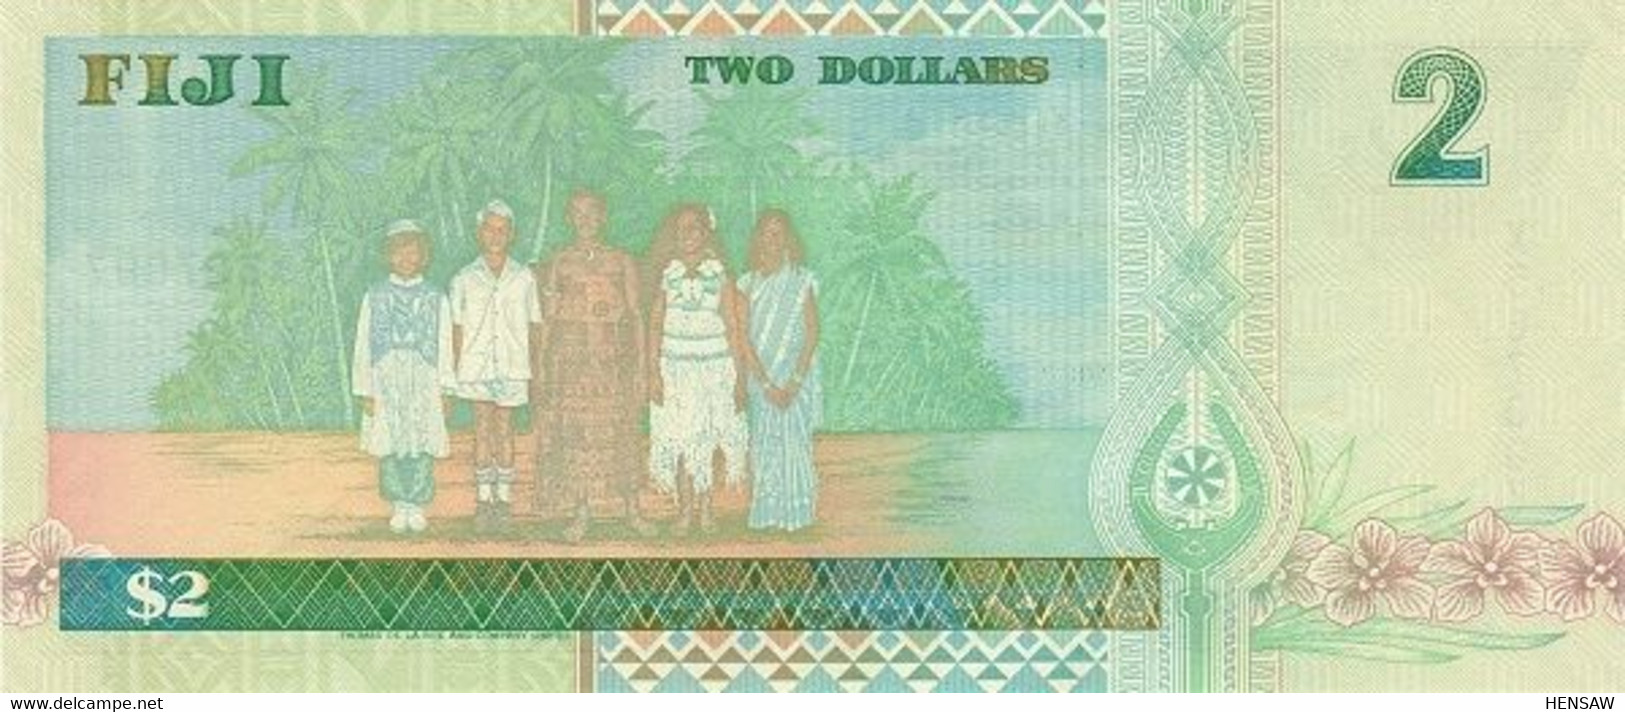 FIJI 2 DOLLARS 1996 P 96a SINGLE LETTER PREFIX UNC SC NUEVO - Fiji